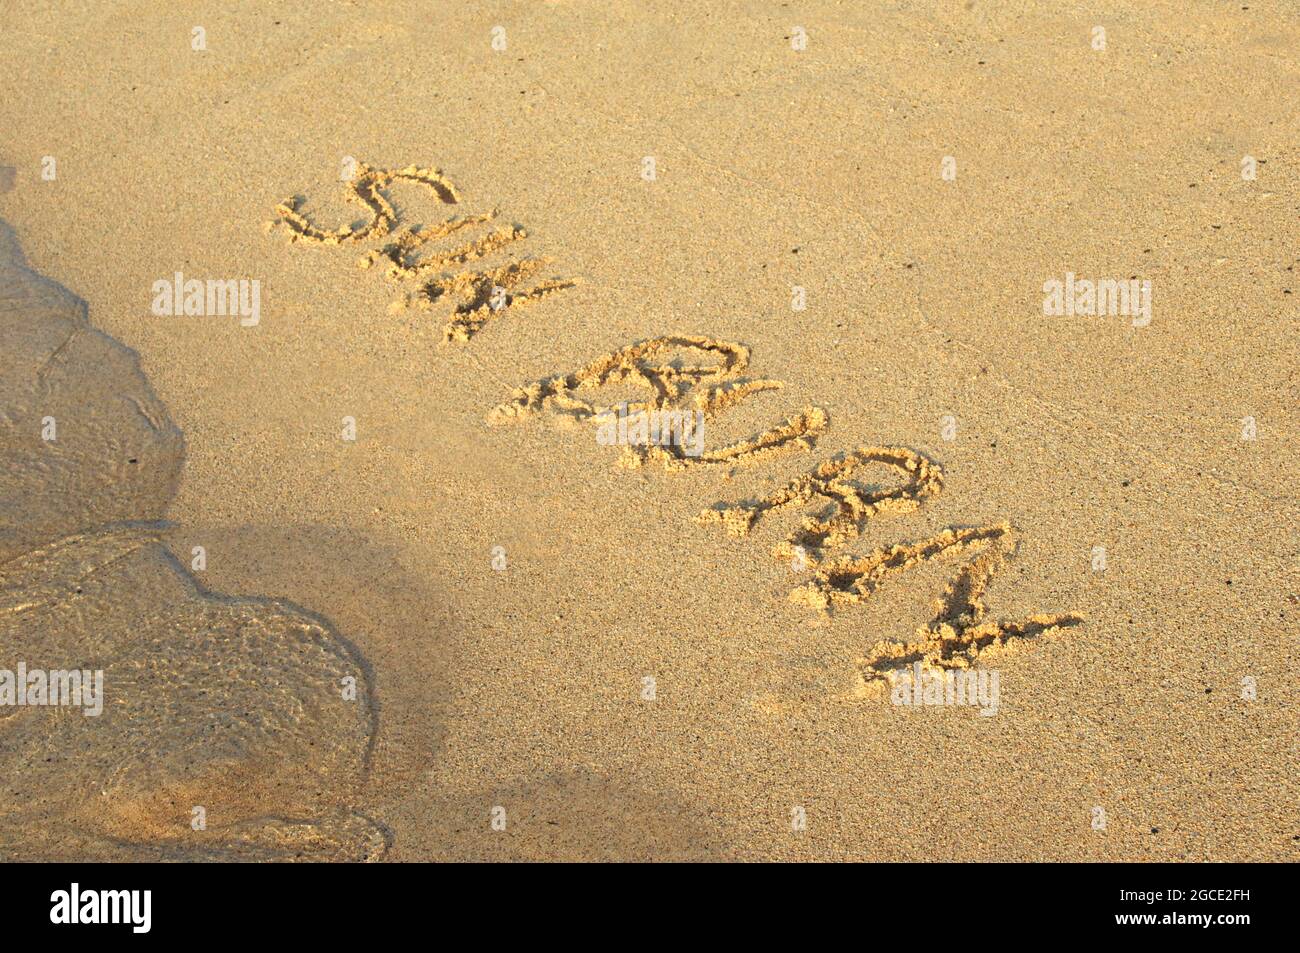 Scottature possono rovinare la vostra vacanza di sogno. Mano scritta nella sabbia, le lettere incantano 'un burn' su Brennecke Beach, Kauai, Hawaii. Foto Stock